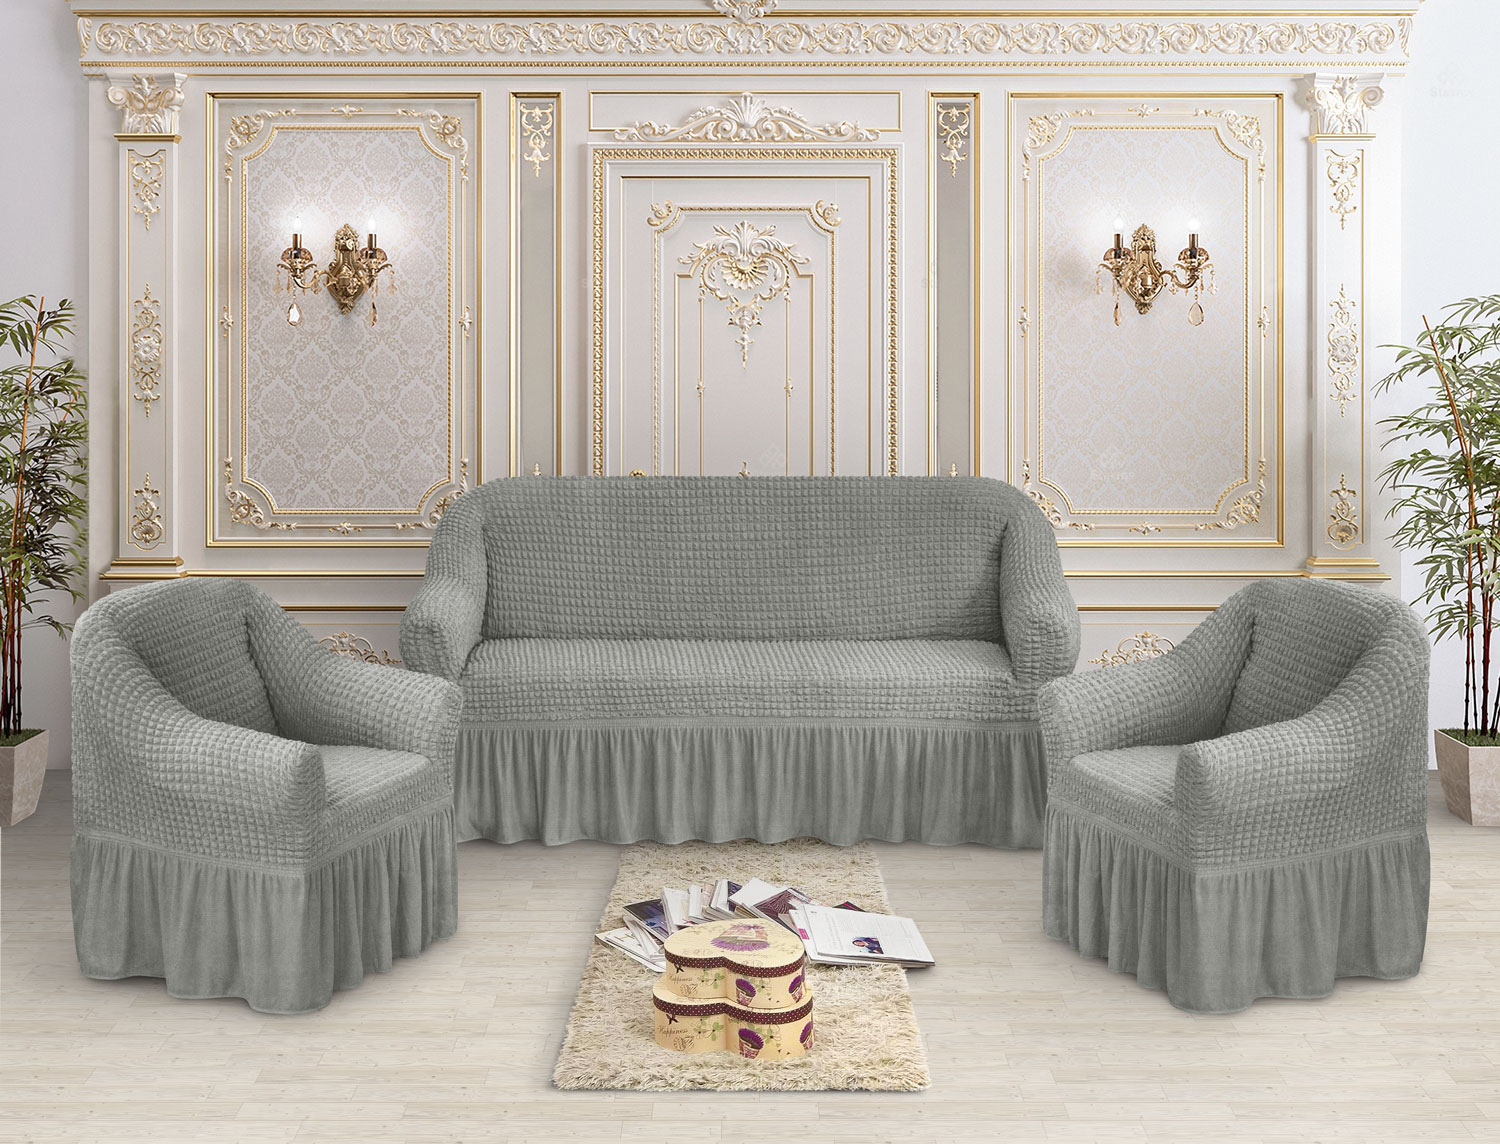 Marianna Комплект чехлов на диван и на два кресла Asemya Цвет: Серебряный